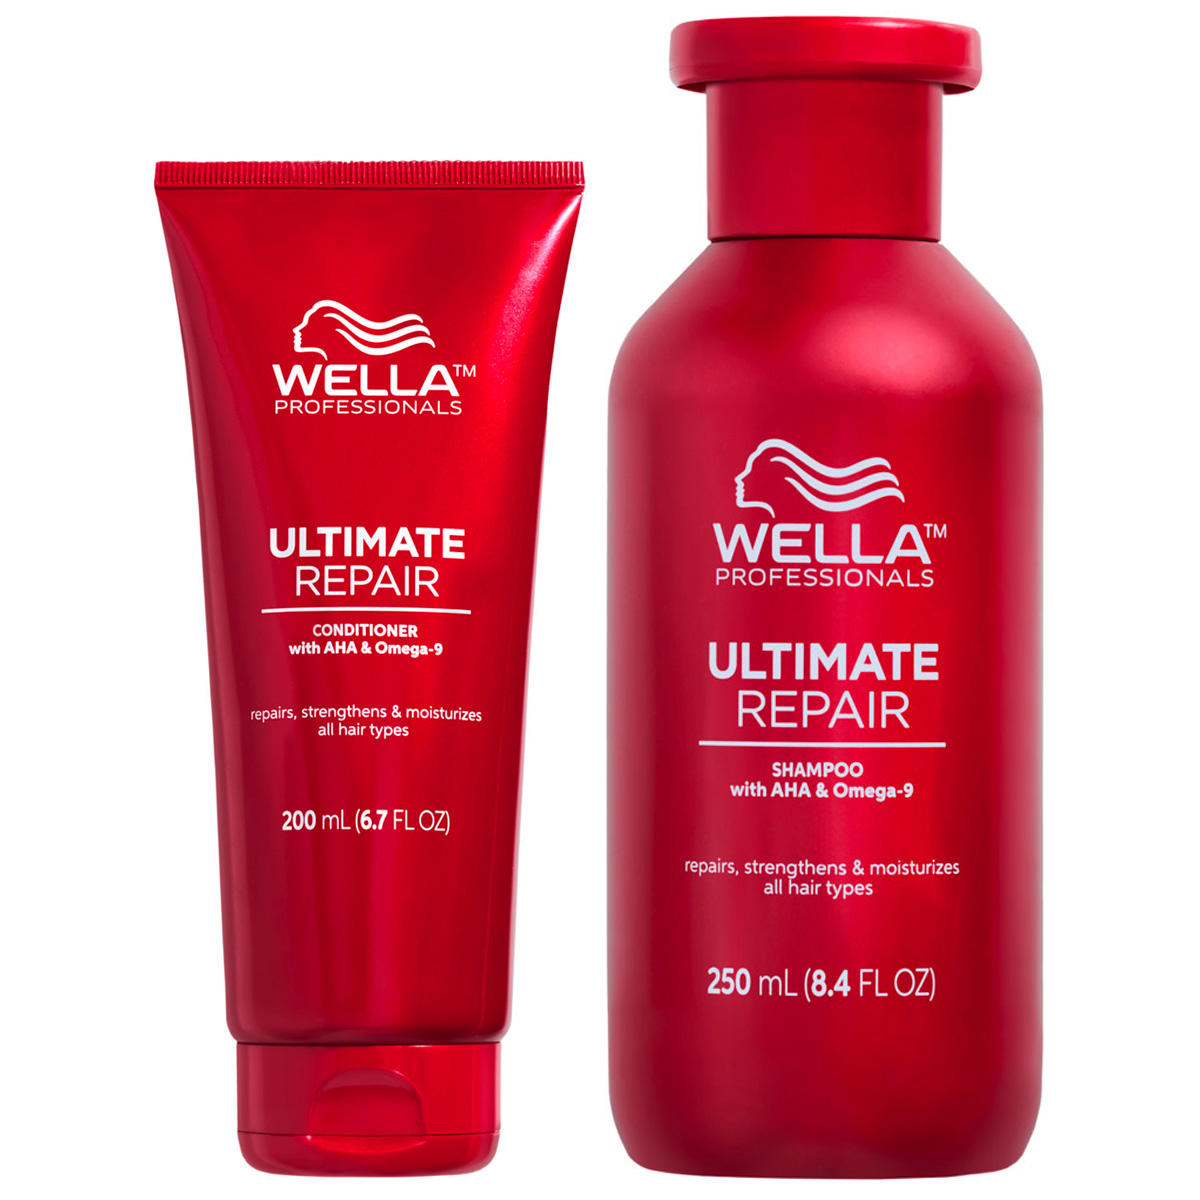 Wella Ultimate Repair Daily Kit small